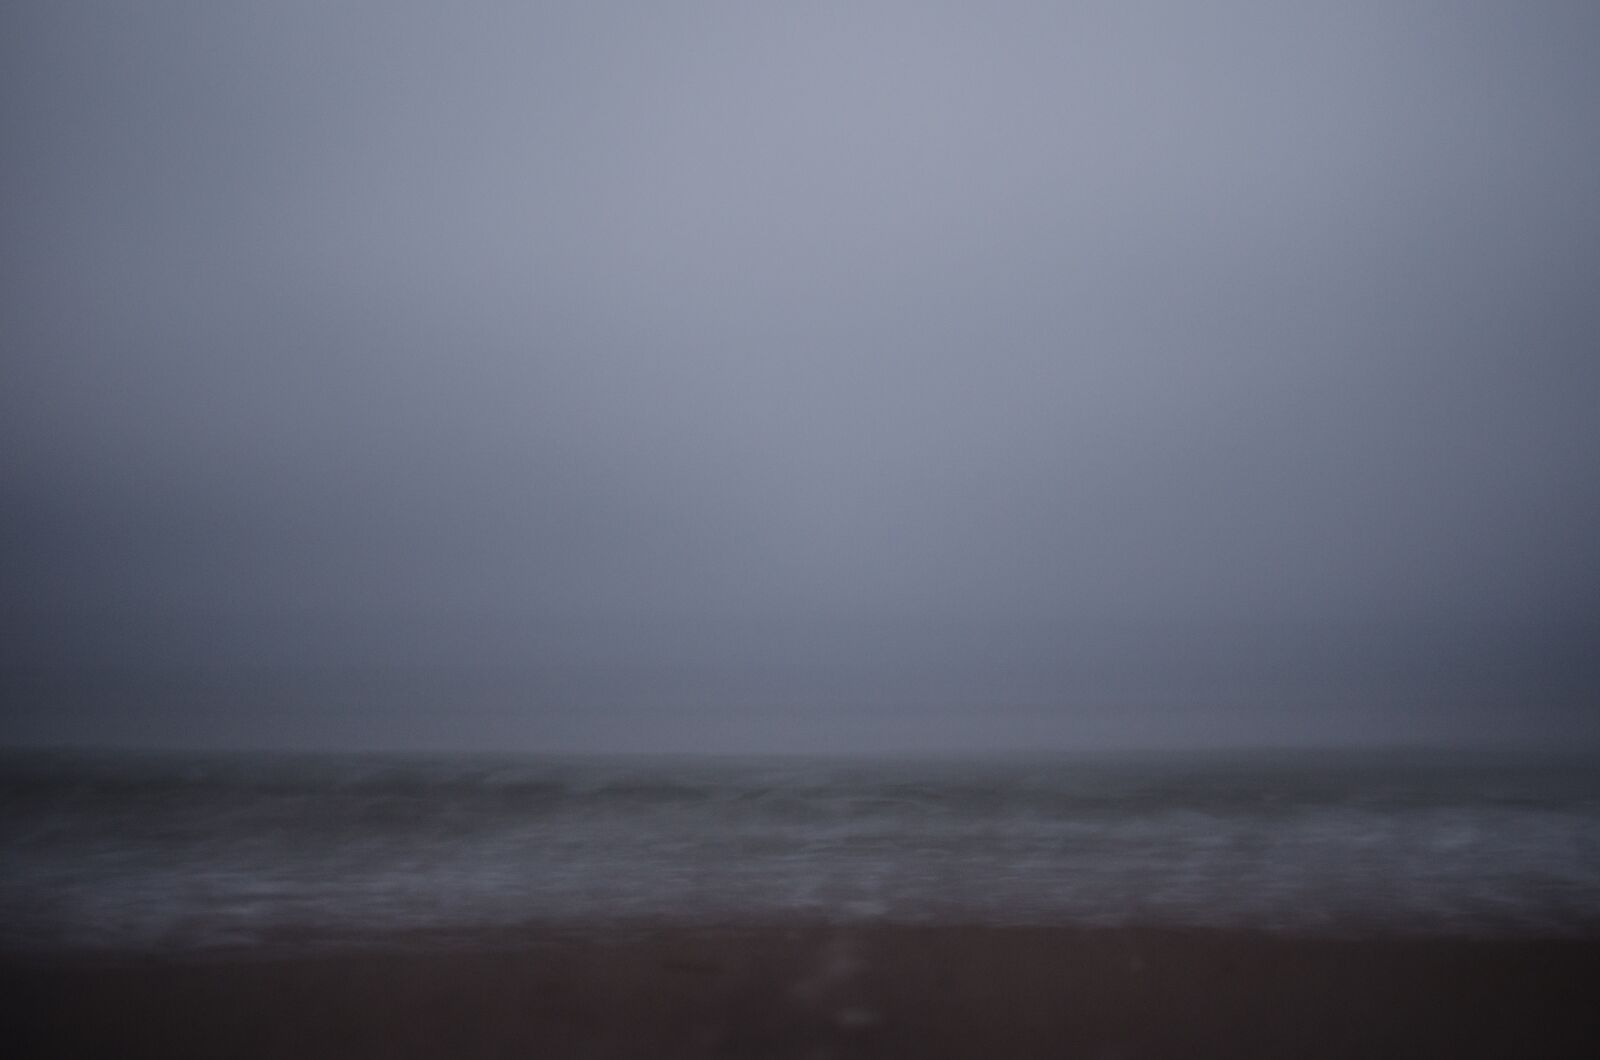 Nikon D5100 sample photo. Misty, mist, fog photography